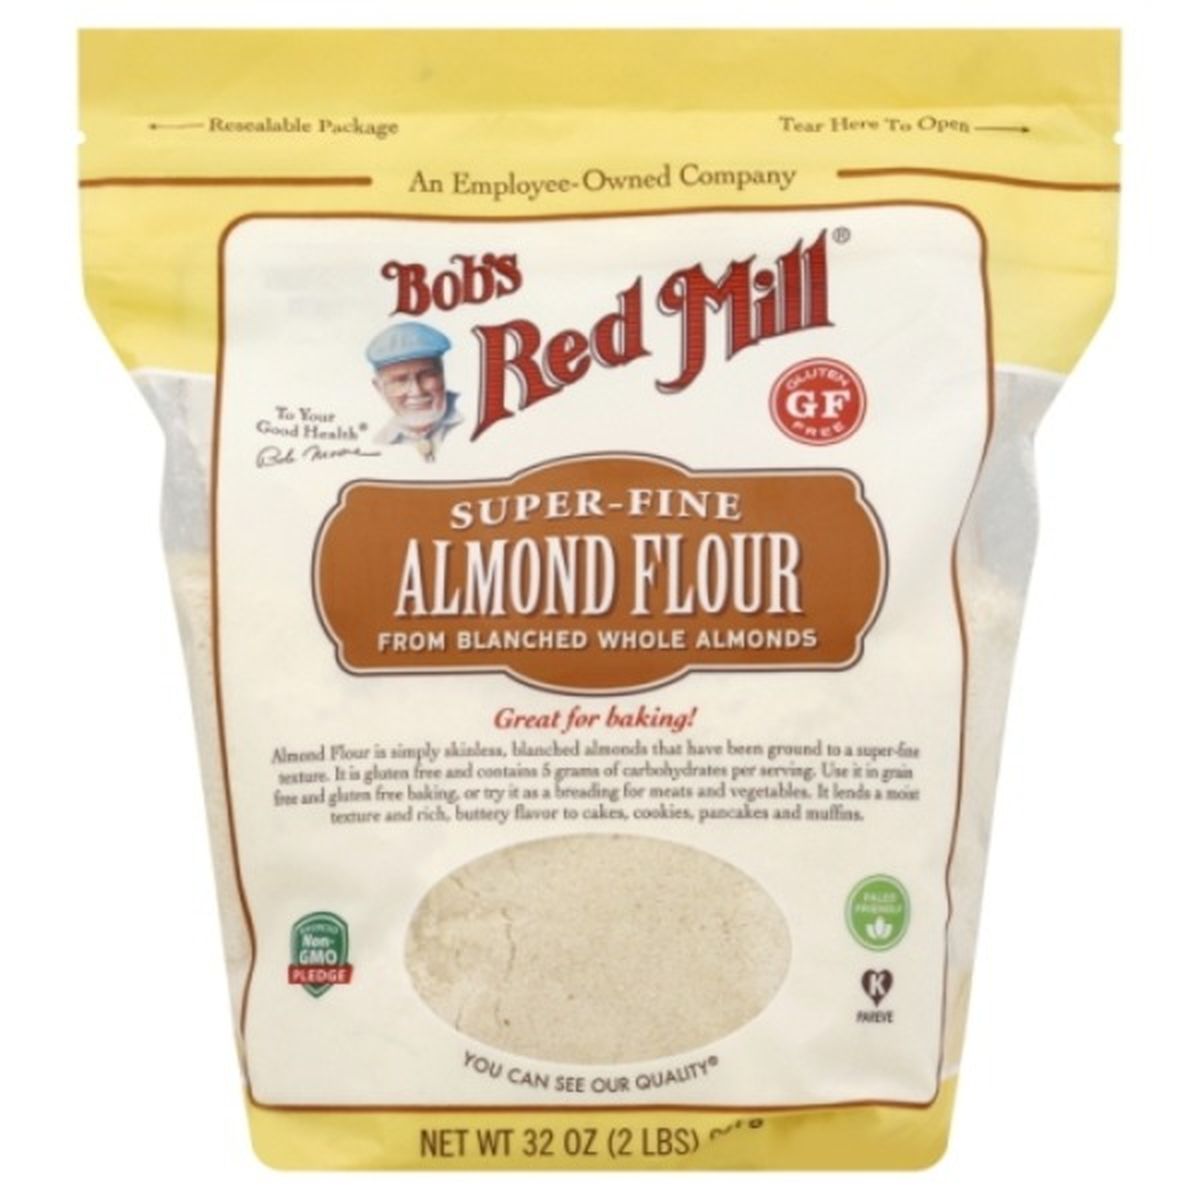 Calories in Bob's Red Mill Almond Flour, Super-Fine